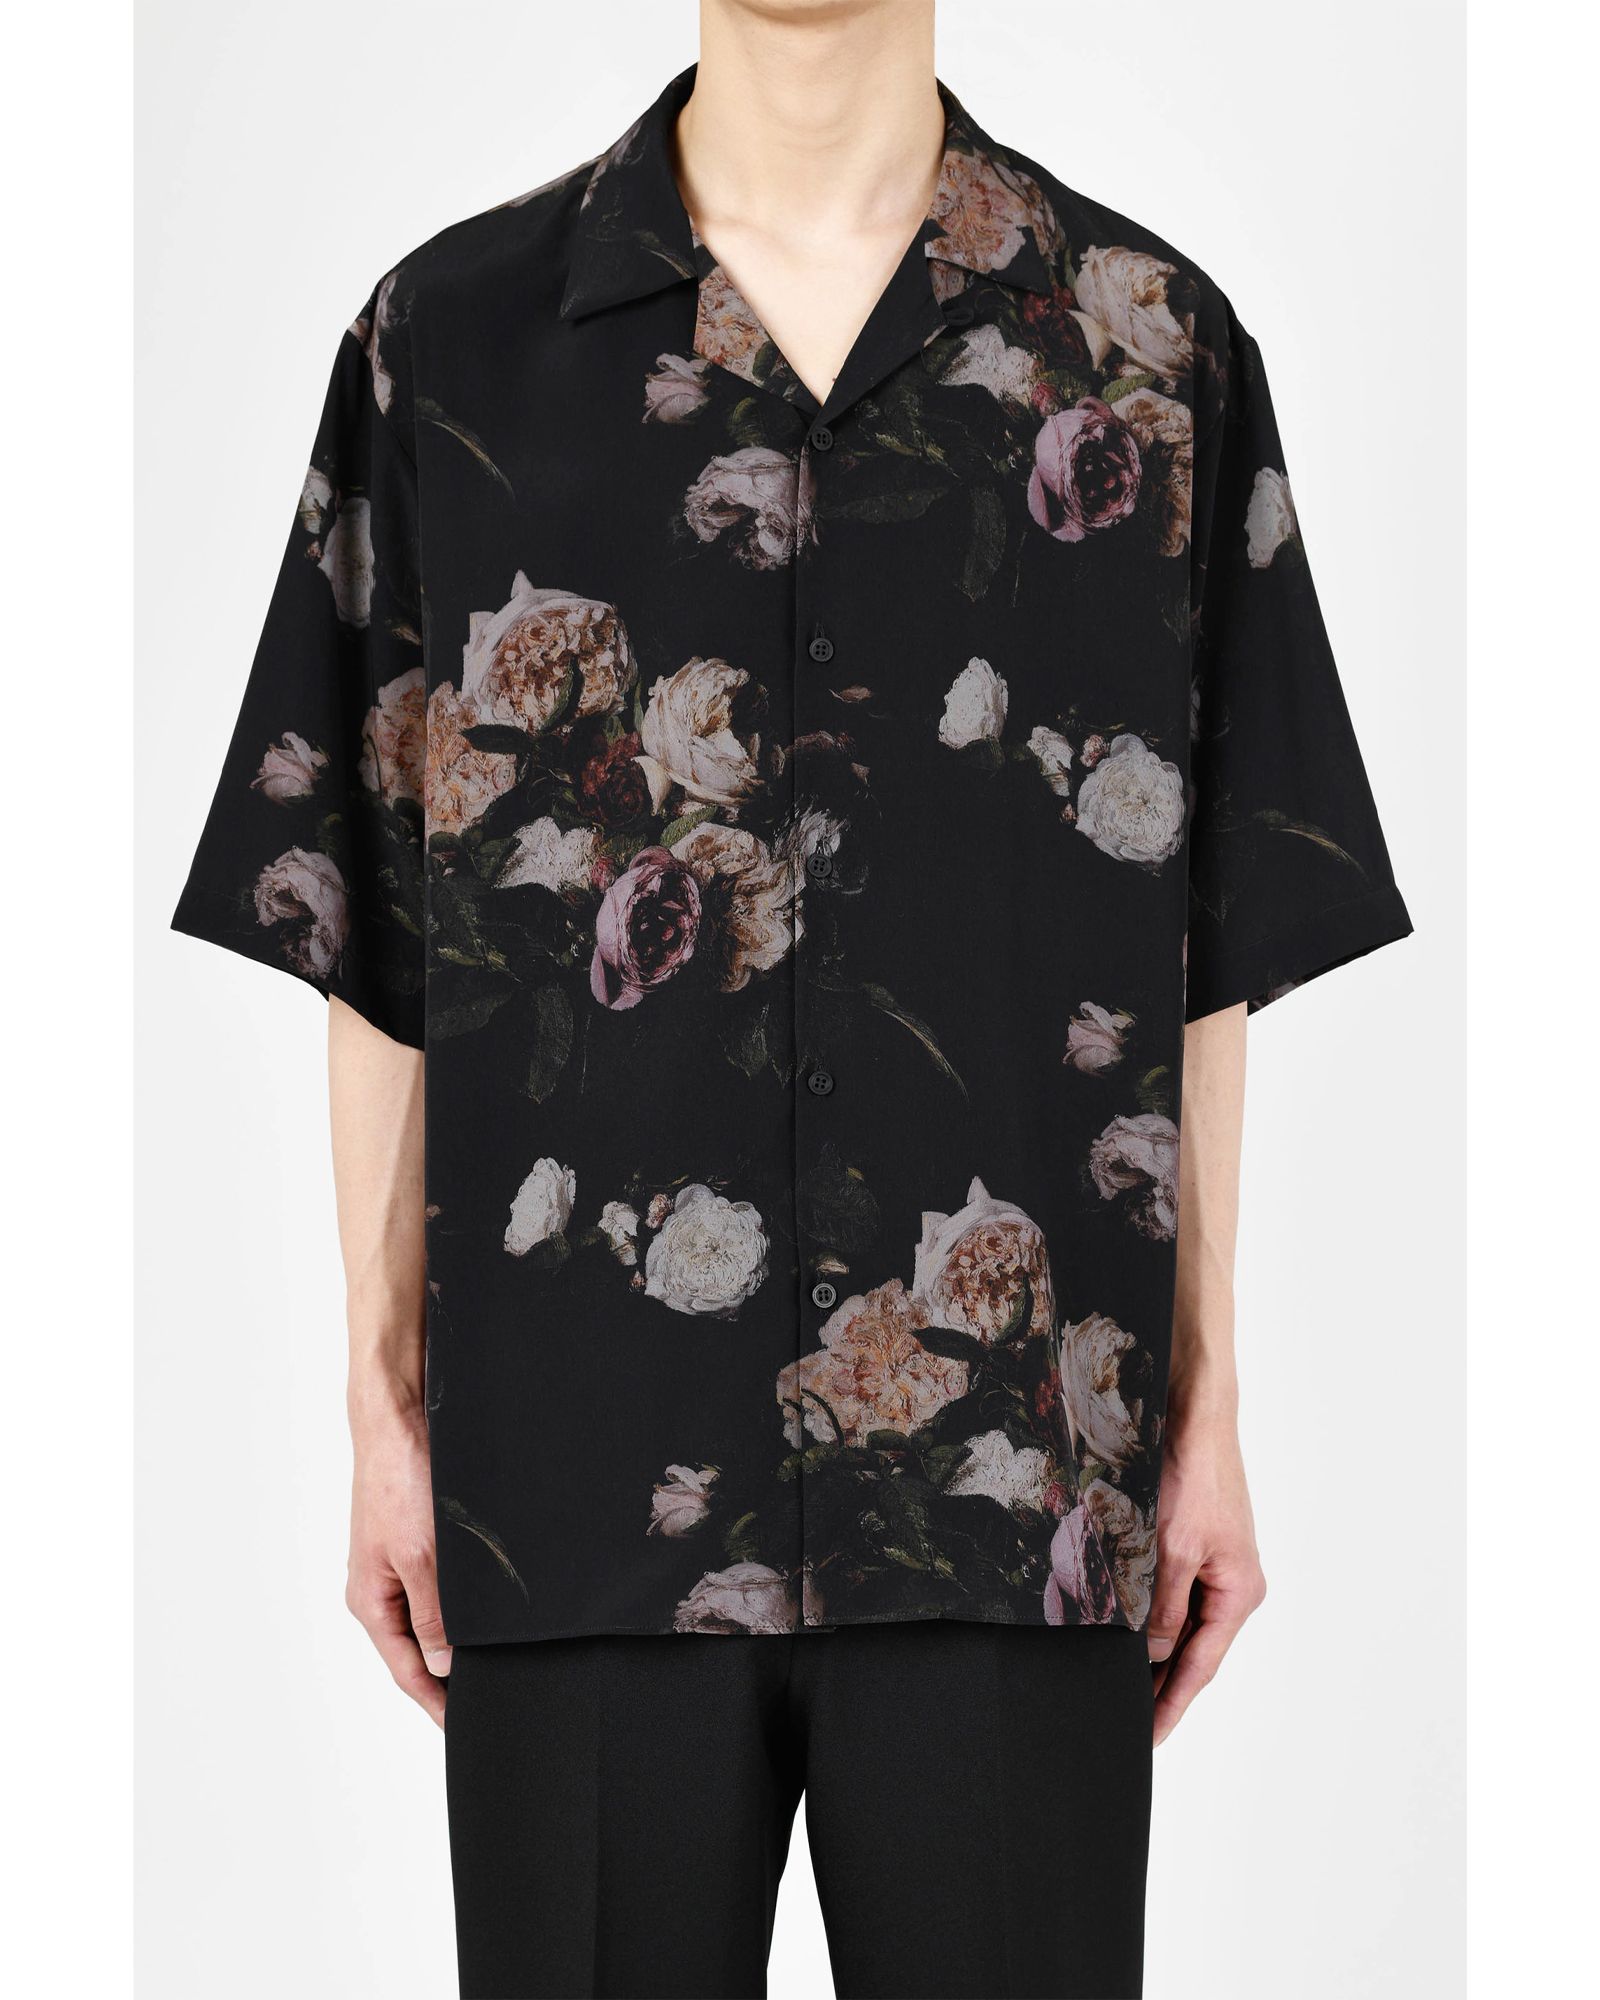 LAD MUSICIAN - Paint Flower Short Sleeve Open Collar Shirt / 半袖